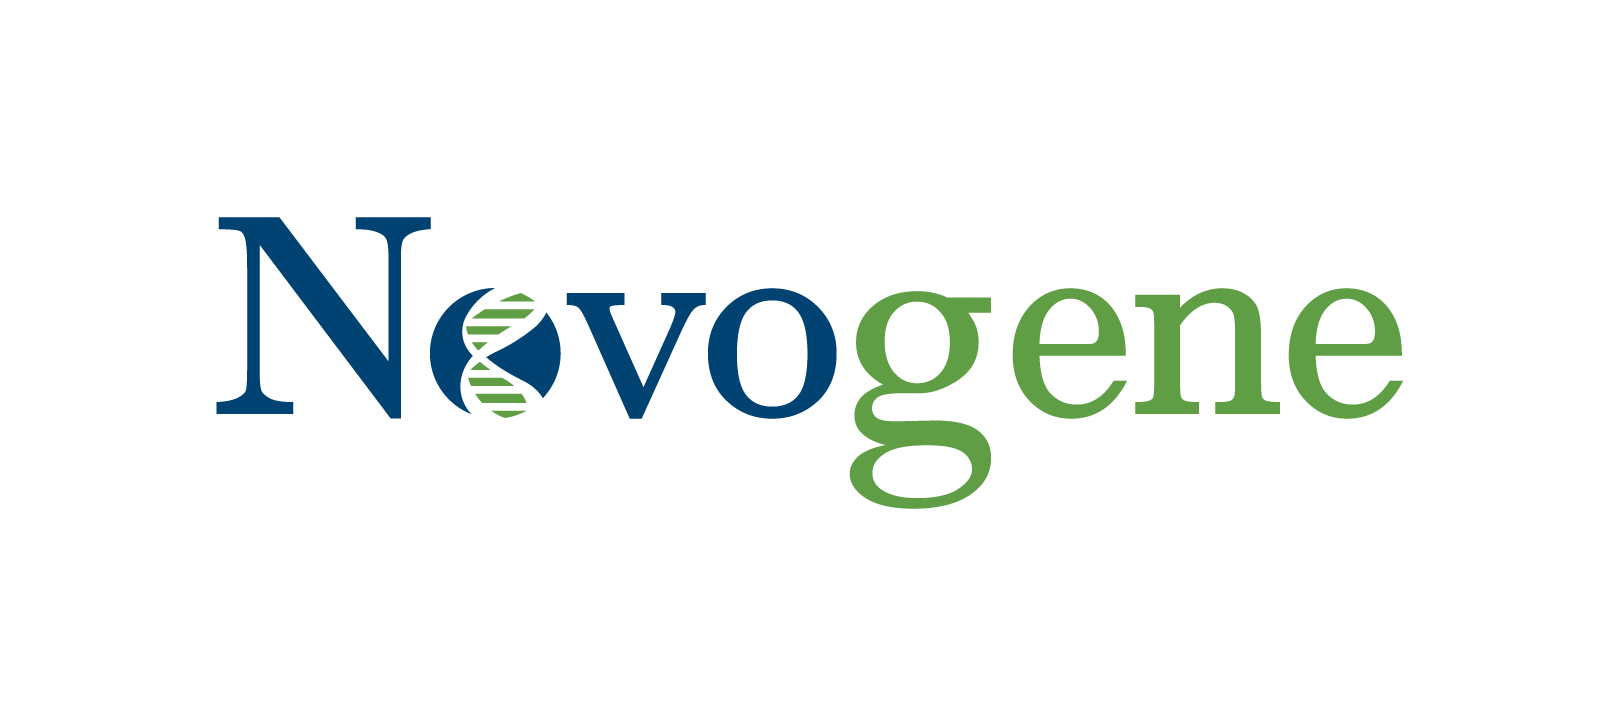 Our co-sponsor - Novogene